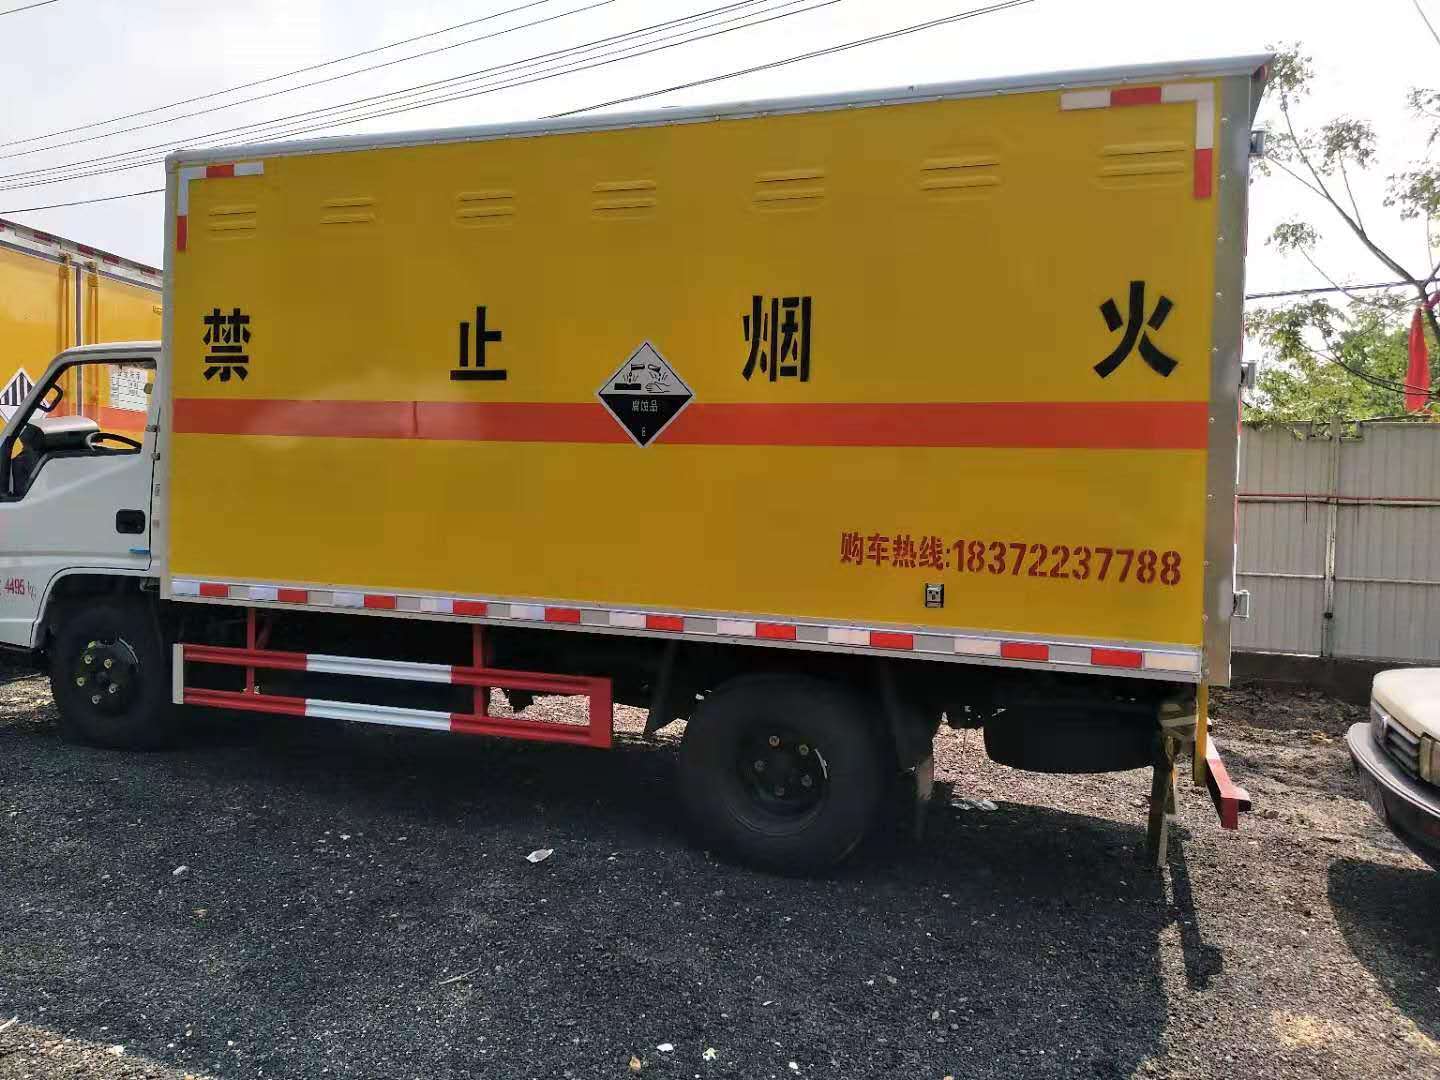 河北王总订购两台危险品车（一台江铃危险品车和一台解放危险品车）发车